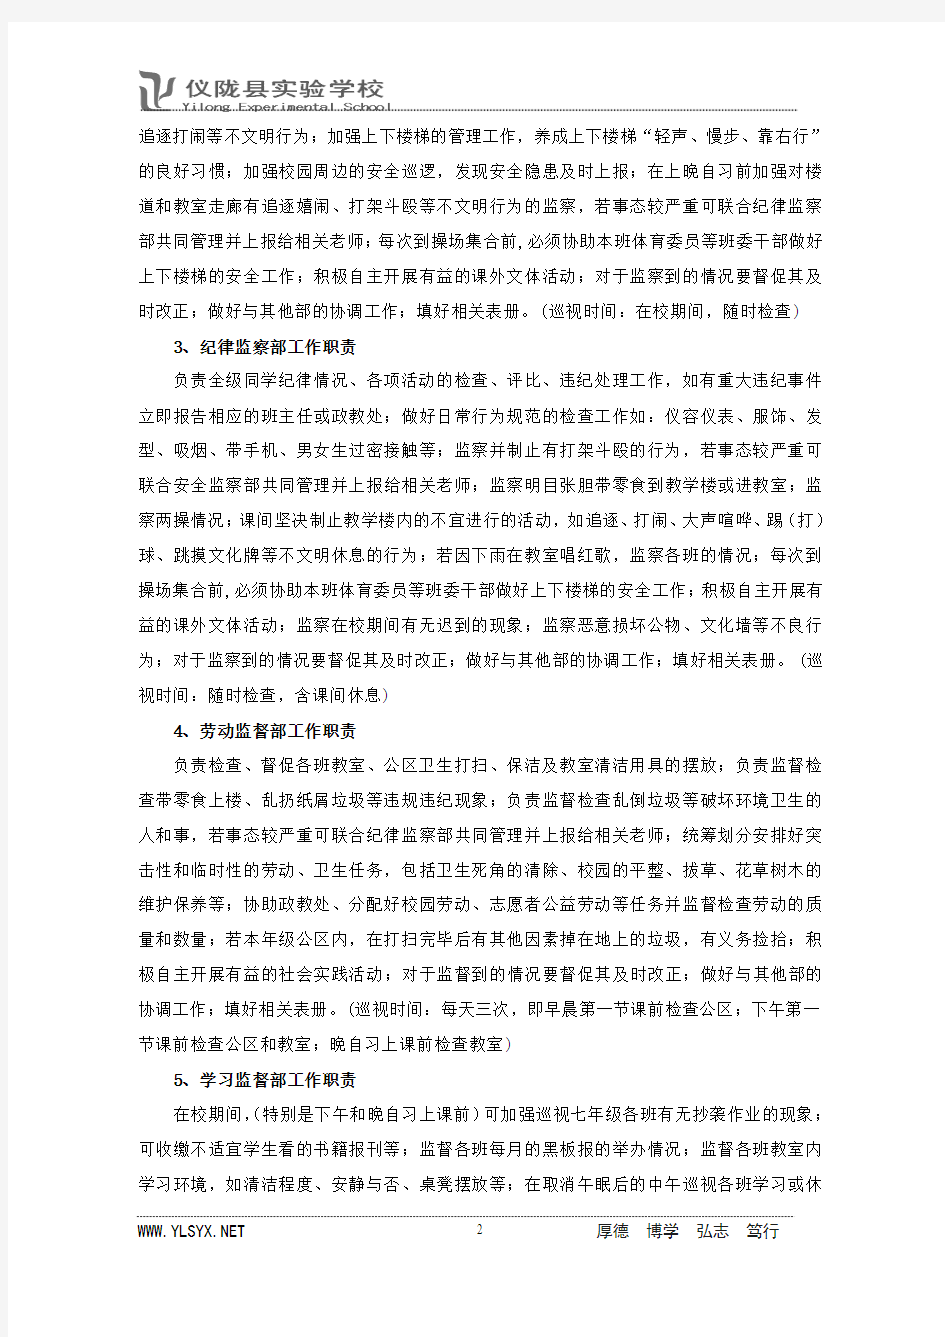 仪陇县实验学校八年级自管会2013秋季